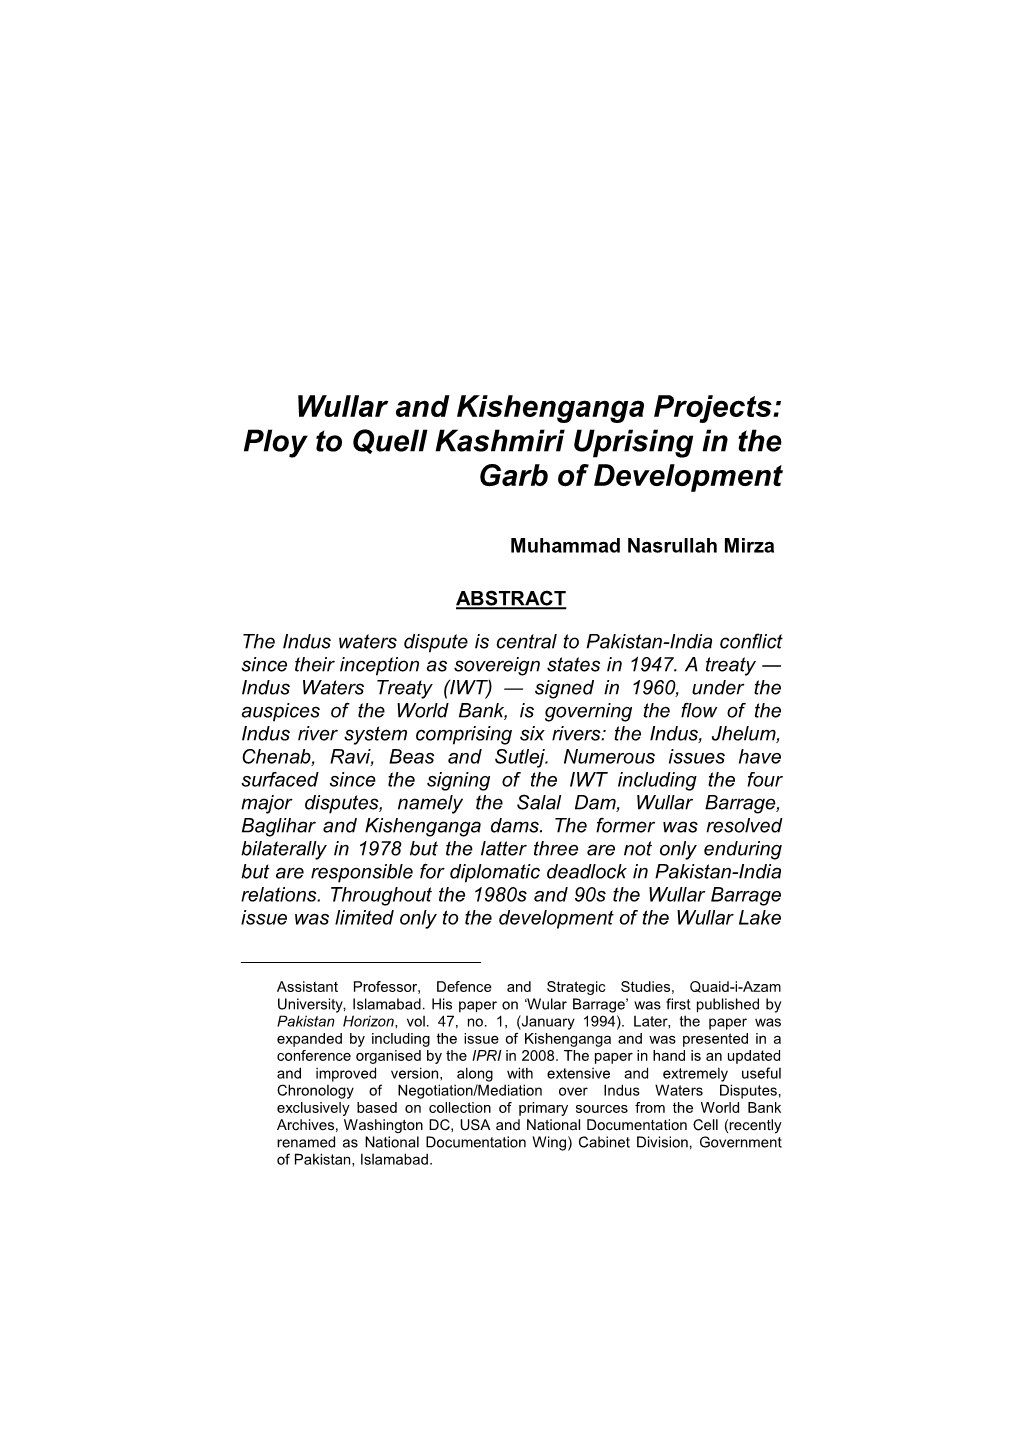 3. Wullar and Kishenganga Projects, Nasrullah Mirza